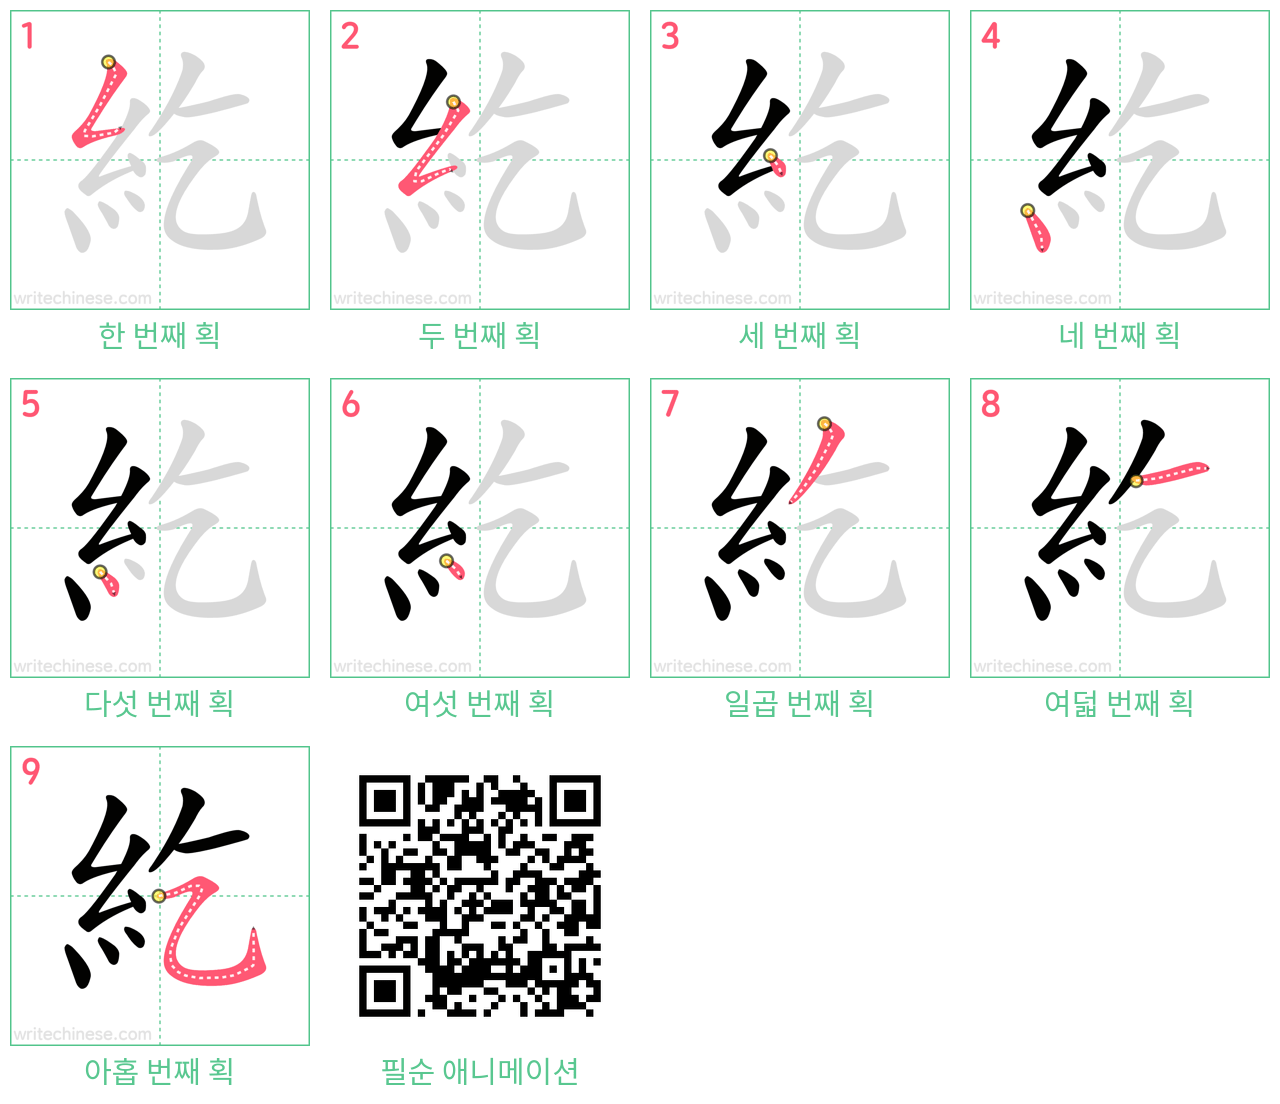 紇 step-by-step stroke order diagrams